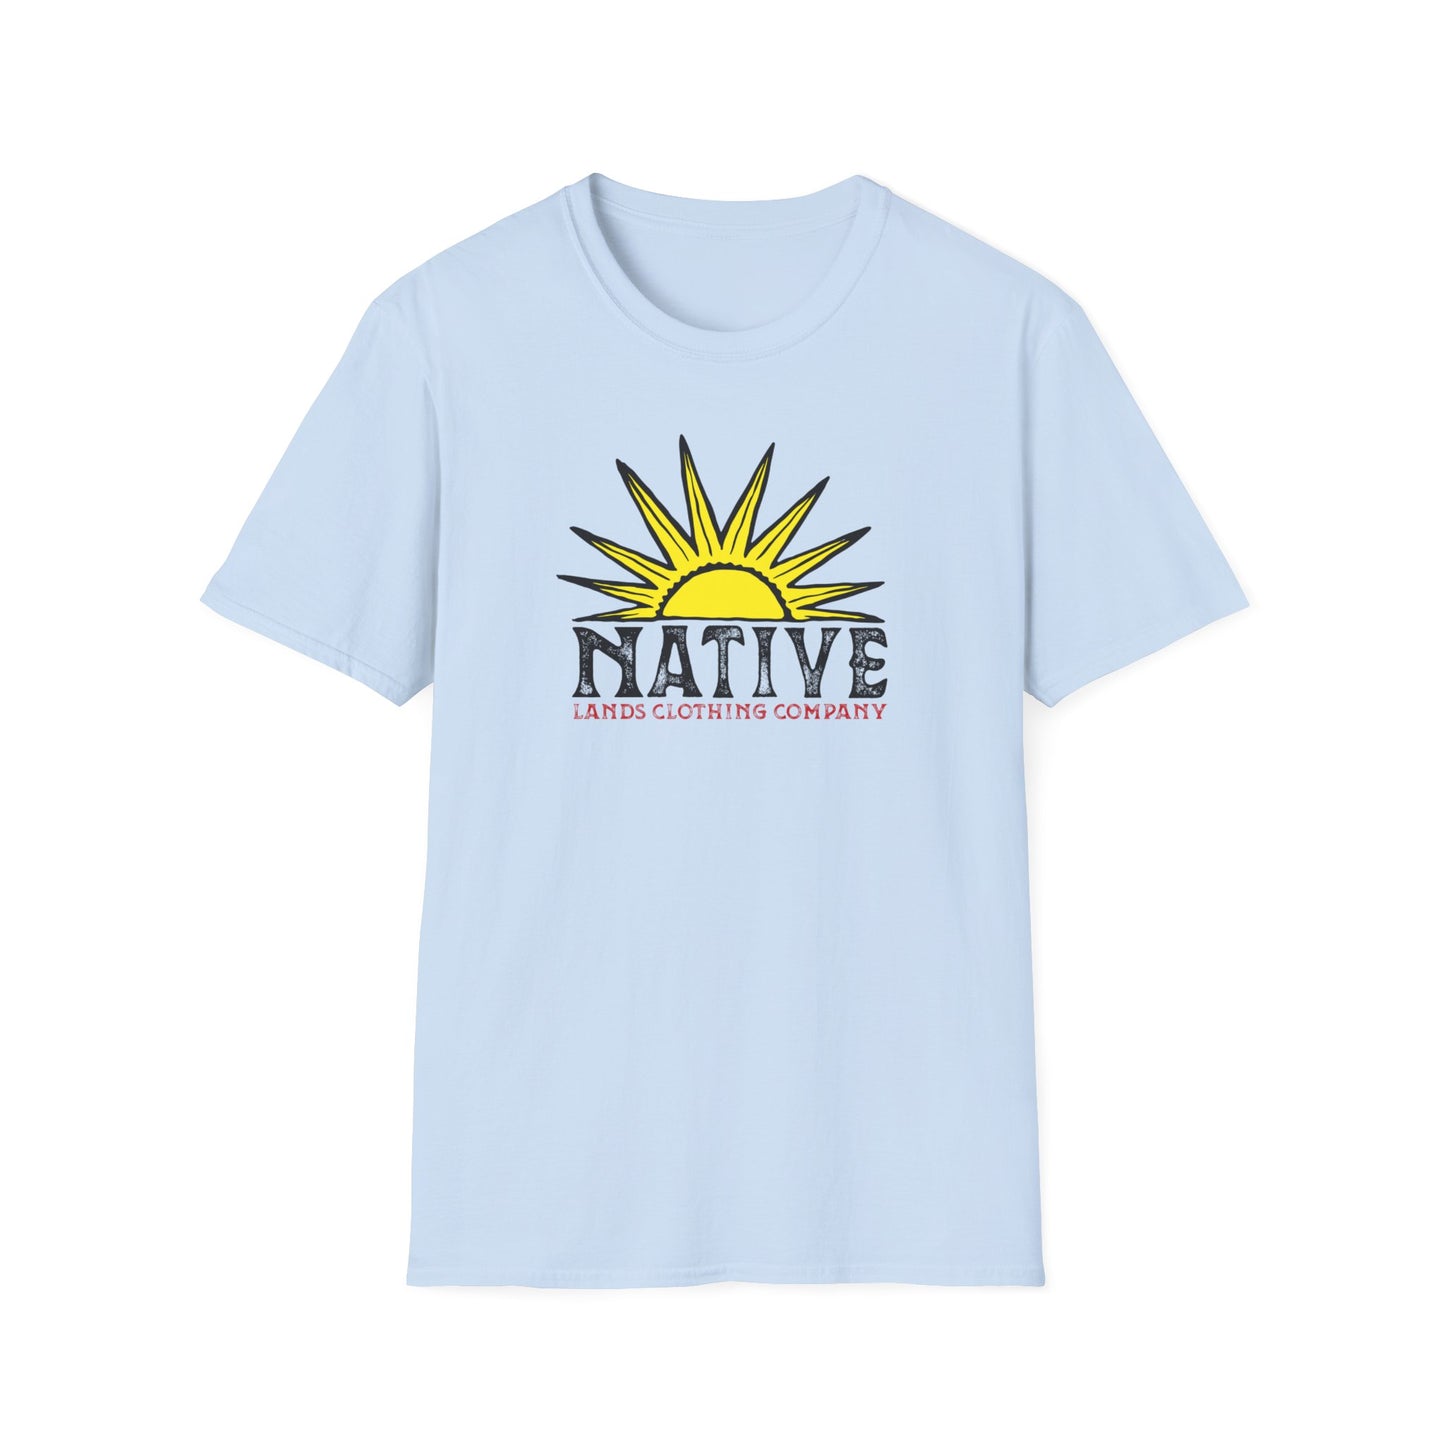 Native Sun Shirt Cotton Native American